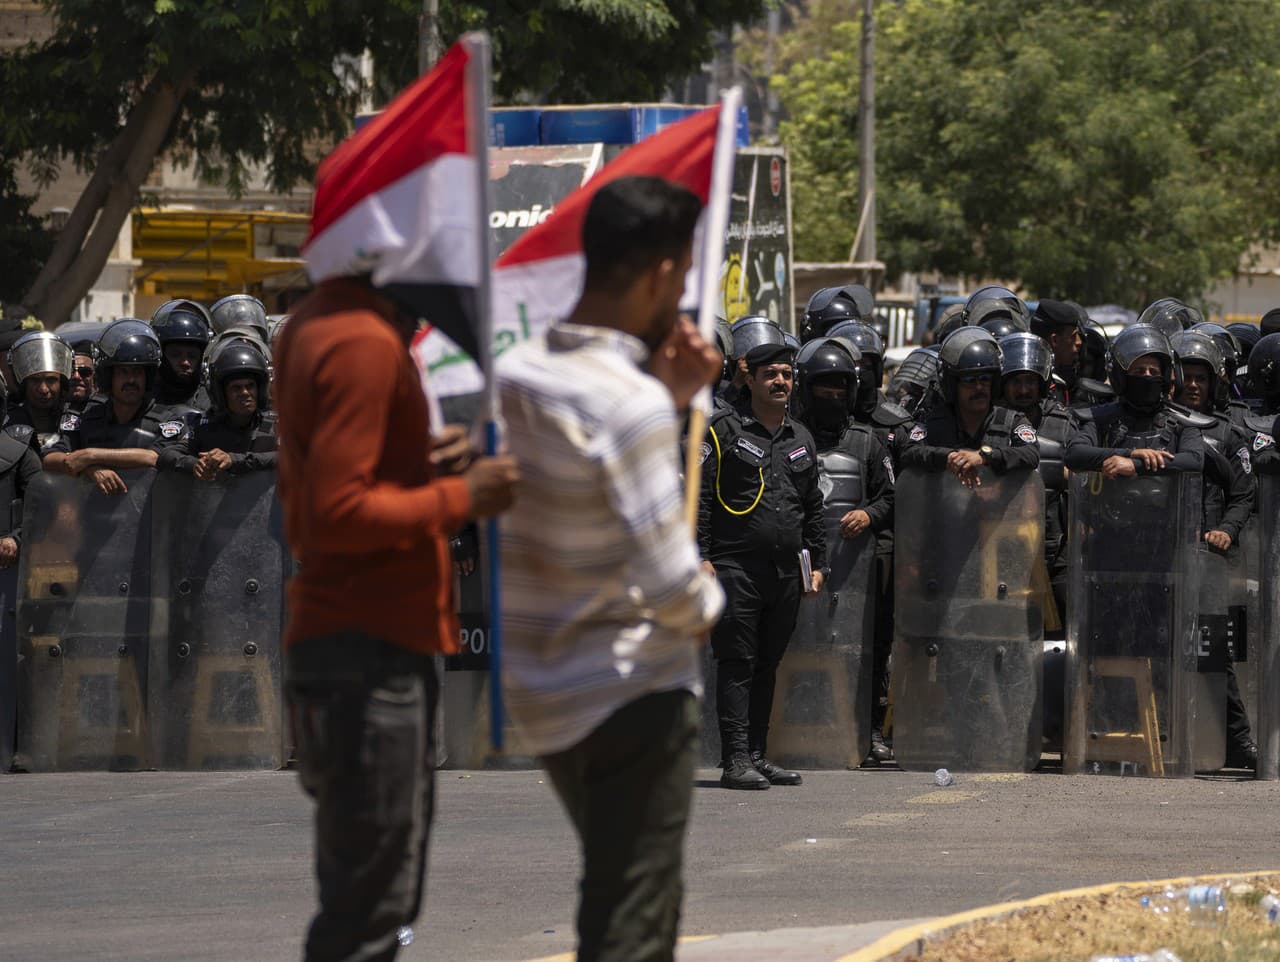 Demonštranti sa zhromažďujú počas protestu pred tureckým veľvyslanectvom v zelenej zóne proti prerušeniu dodávok vody v Iraku, v Bagdade